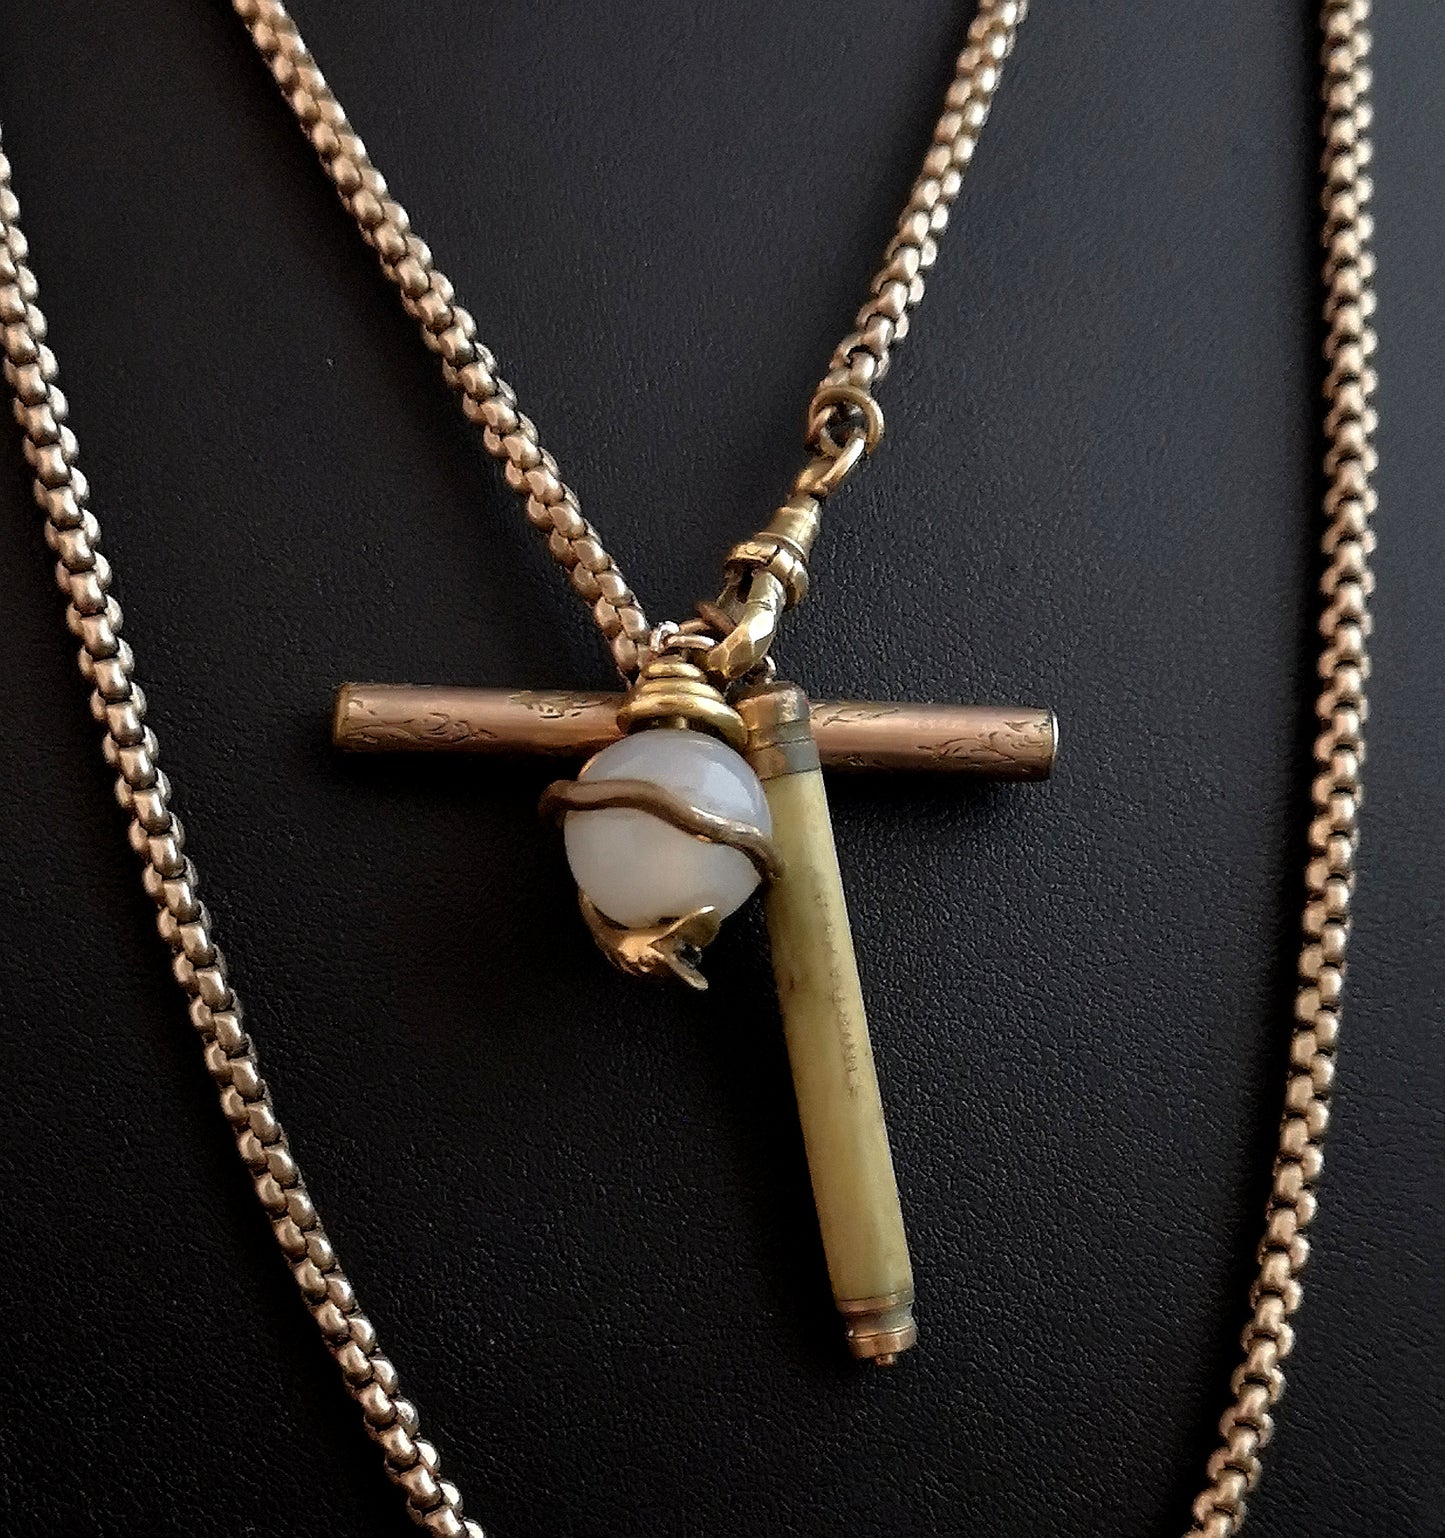 Antique longuard chain, snake pendant, necklace